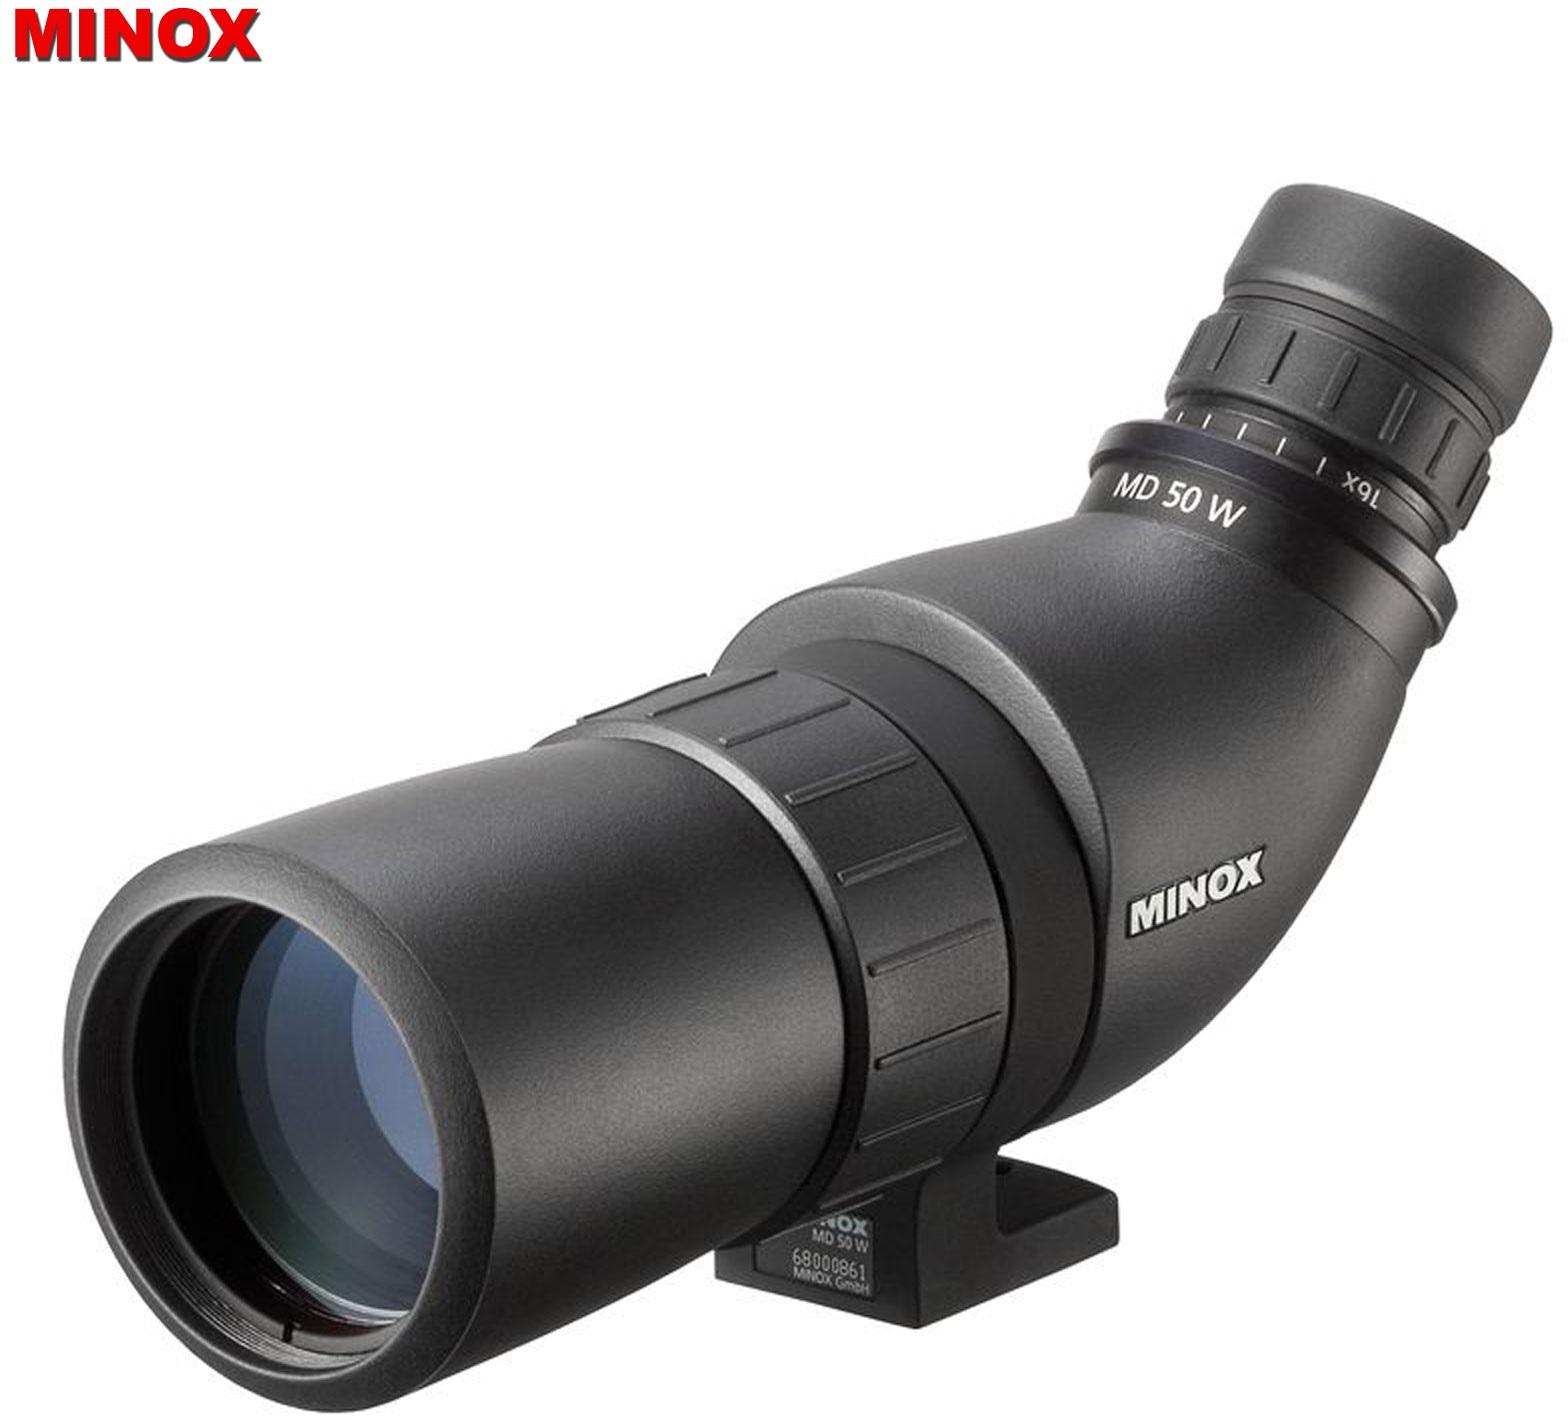 Minox MD 50 W Spotting scope